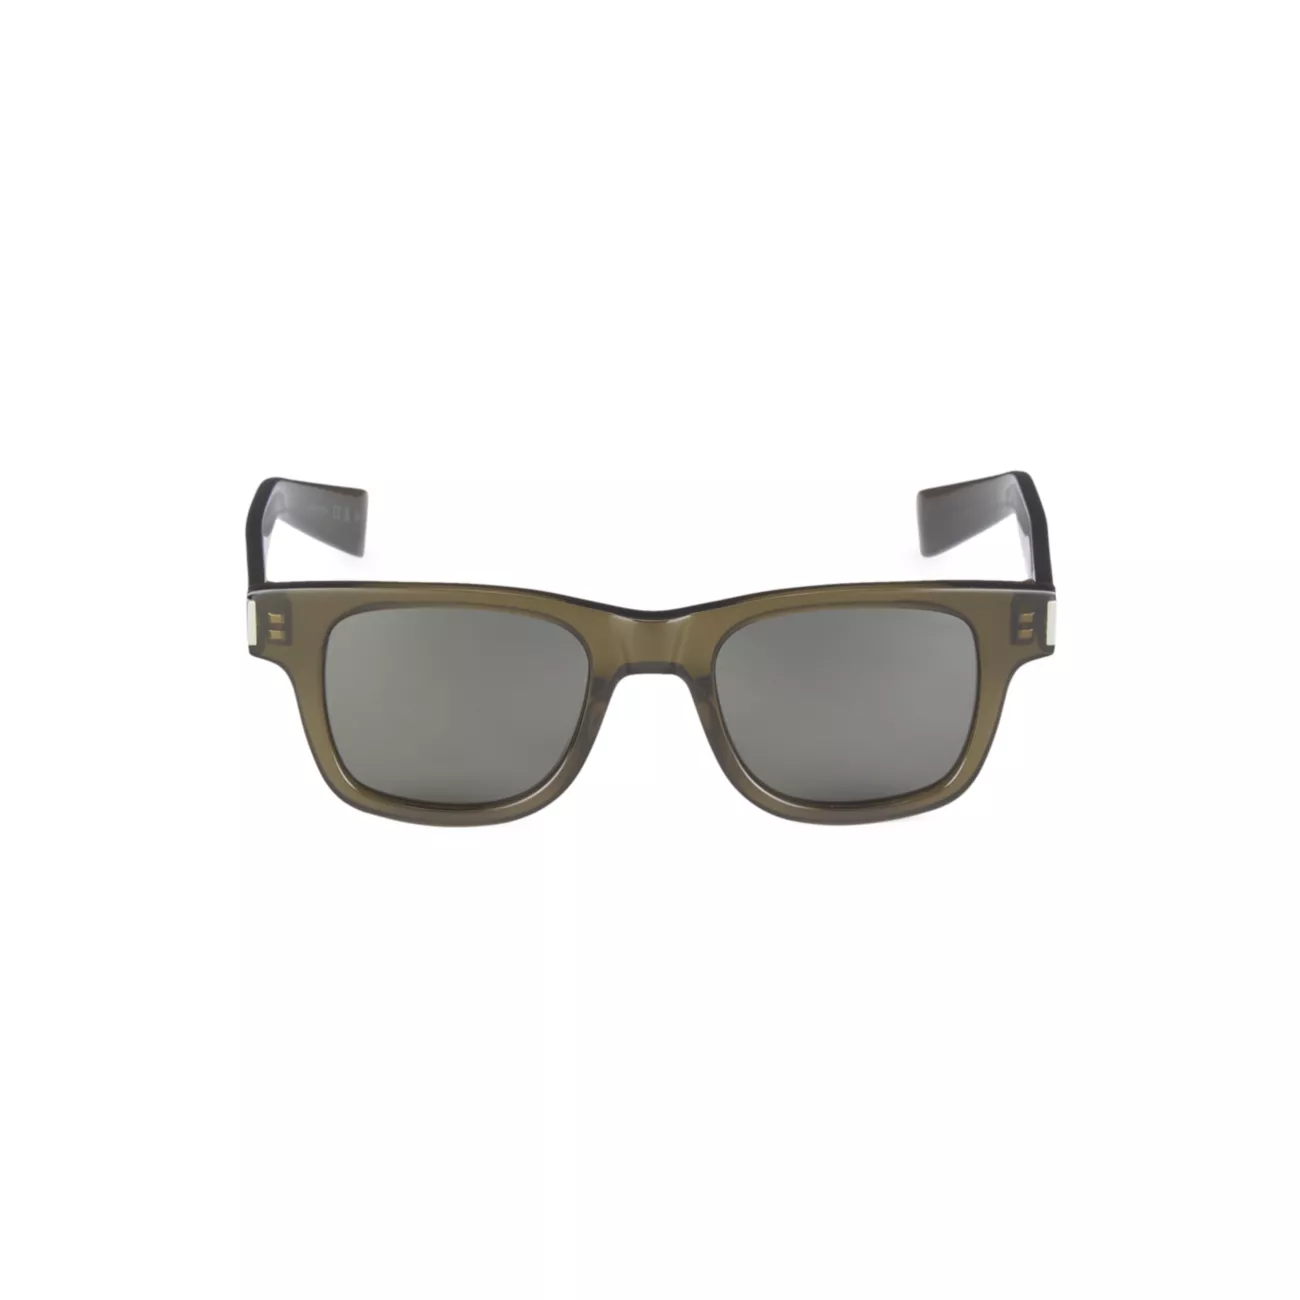 Прямоугольные солнцезащитные очки из ацетата New Wave 47 мм Saint Laurent